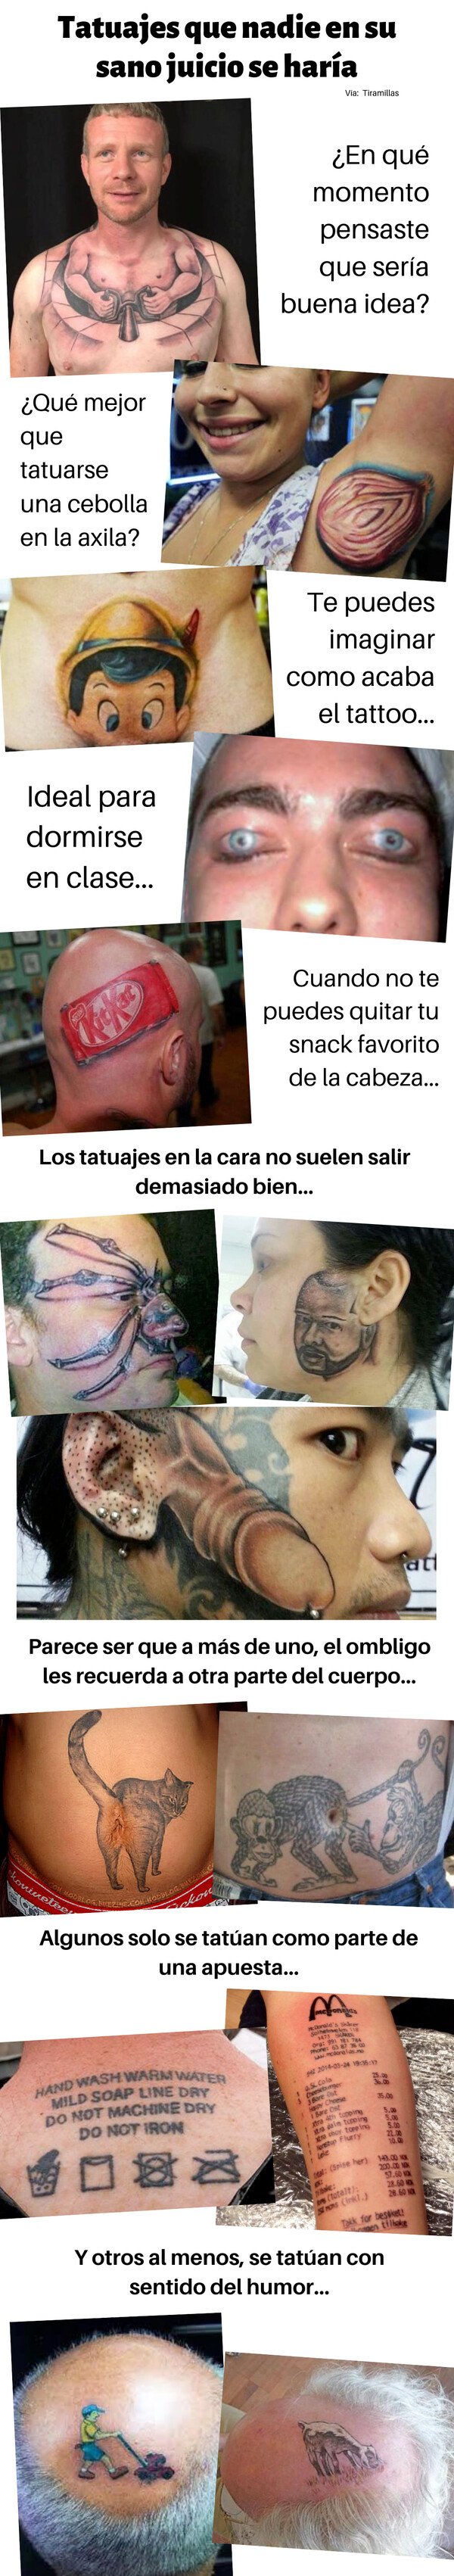 Meme_otros - Tatuajes que nadie en su sano juicio se haría